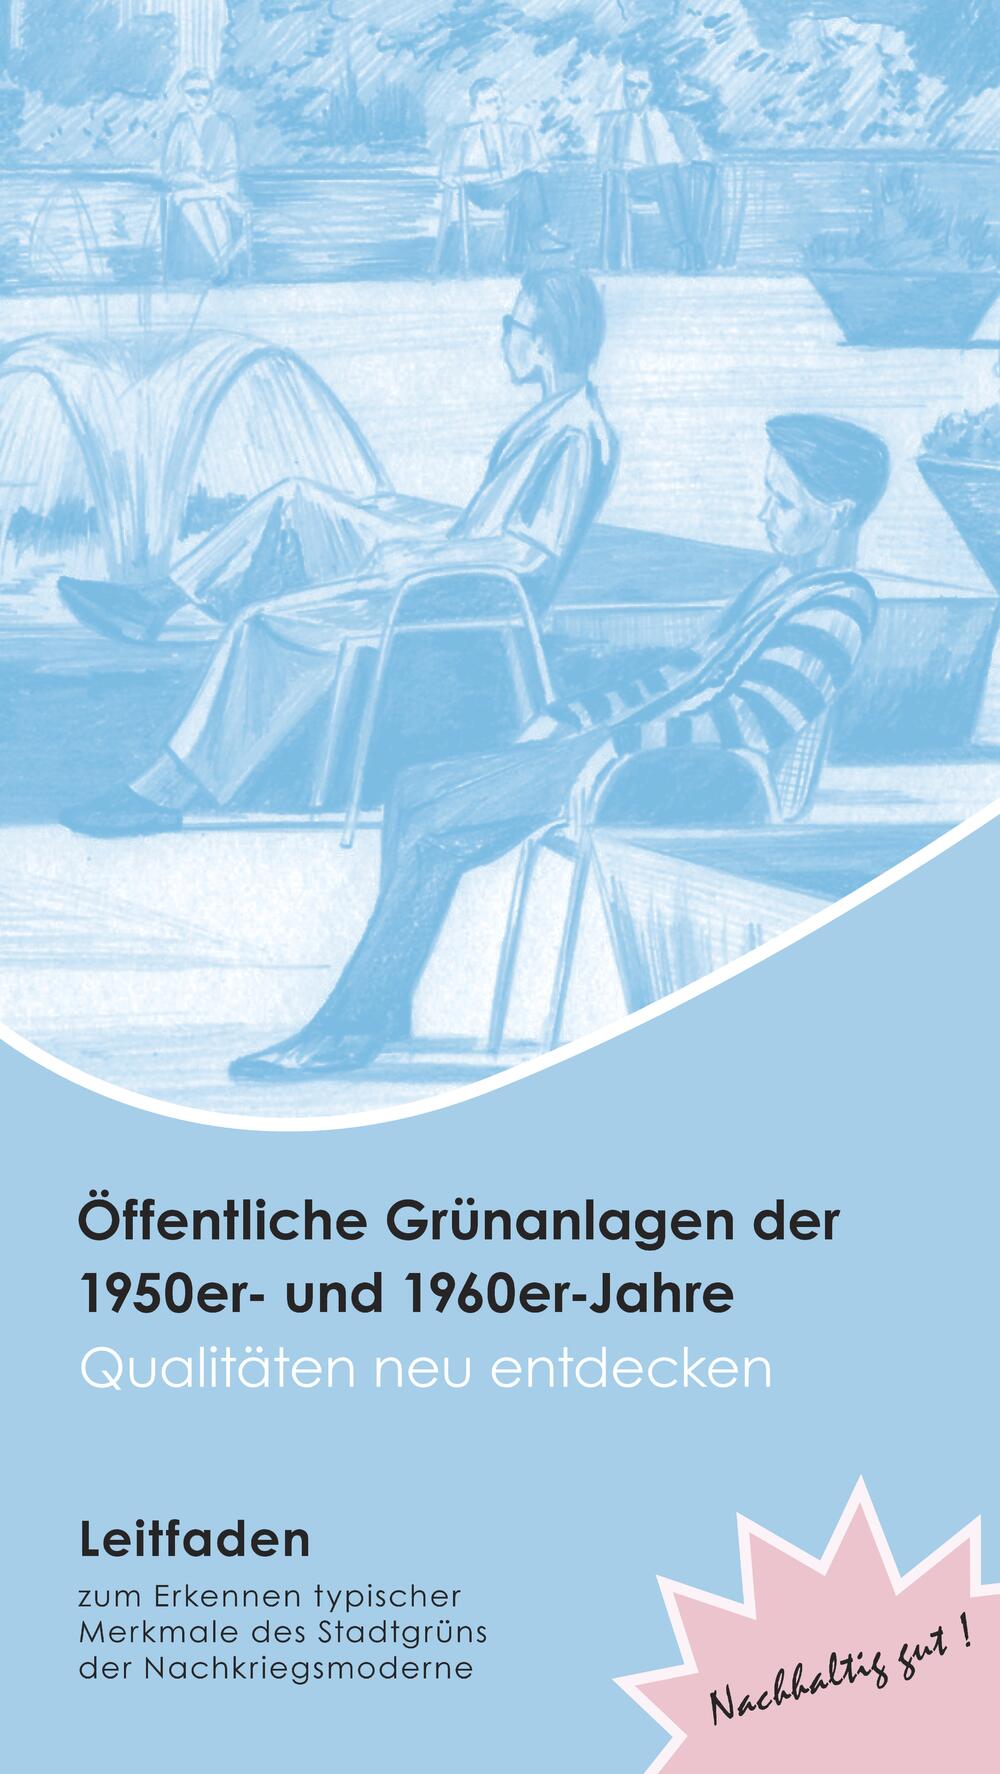 Titelblatt Leitfadens Grünanalgen der 1950er- und 1960er-Jahre © TU Berlin